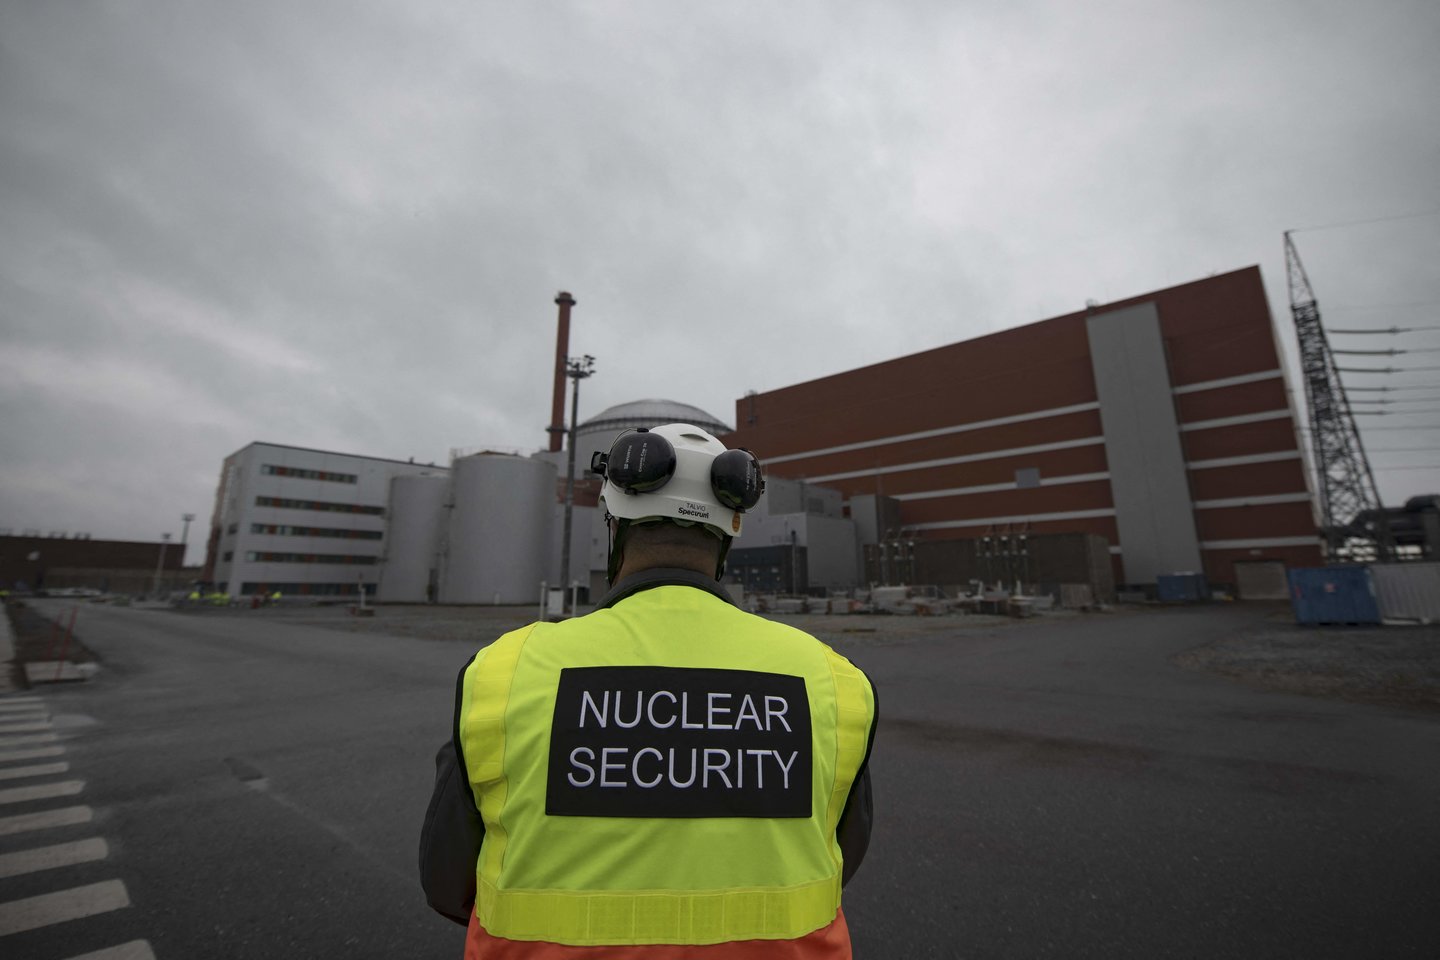 Didžiausias Europoje Suomijos Olkiluoto 3 branduolinis reaktorius trečiadienį vėl išsijungė.<br>Scanpix nuotr.